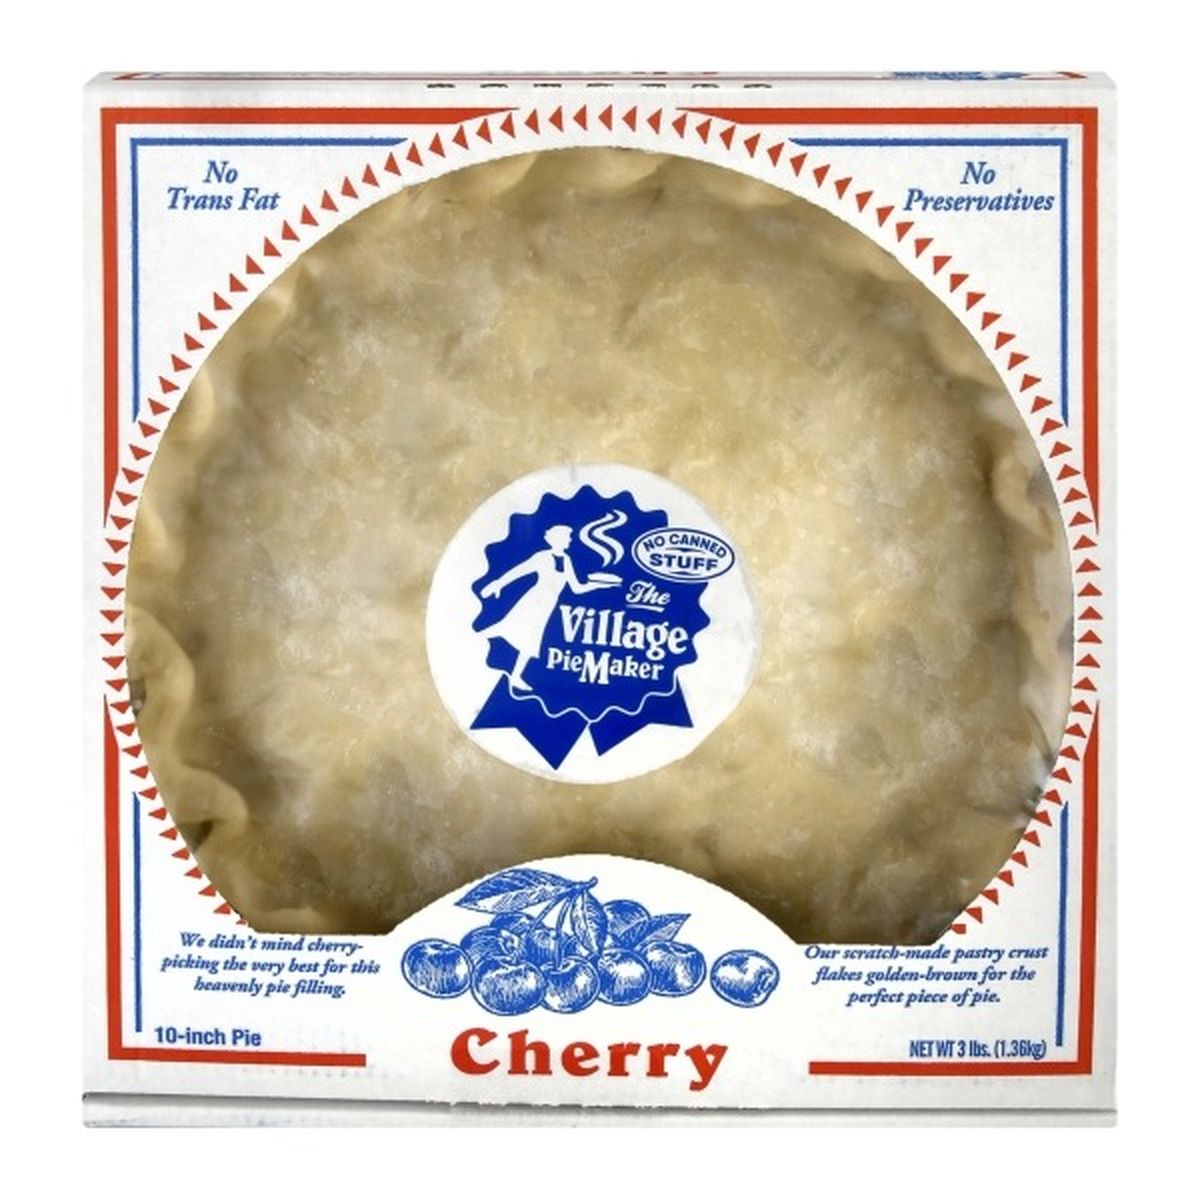 Calories in The Village PieMaker Pie, Cherry, 10-Inch